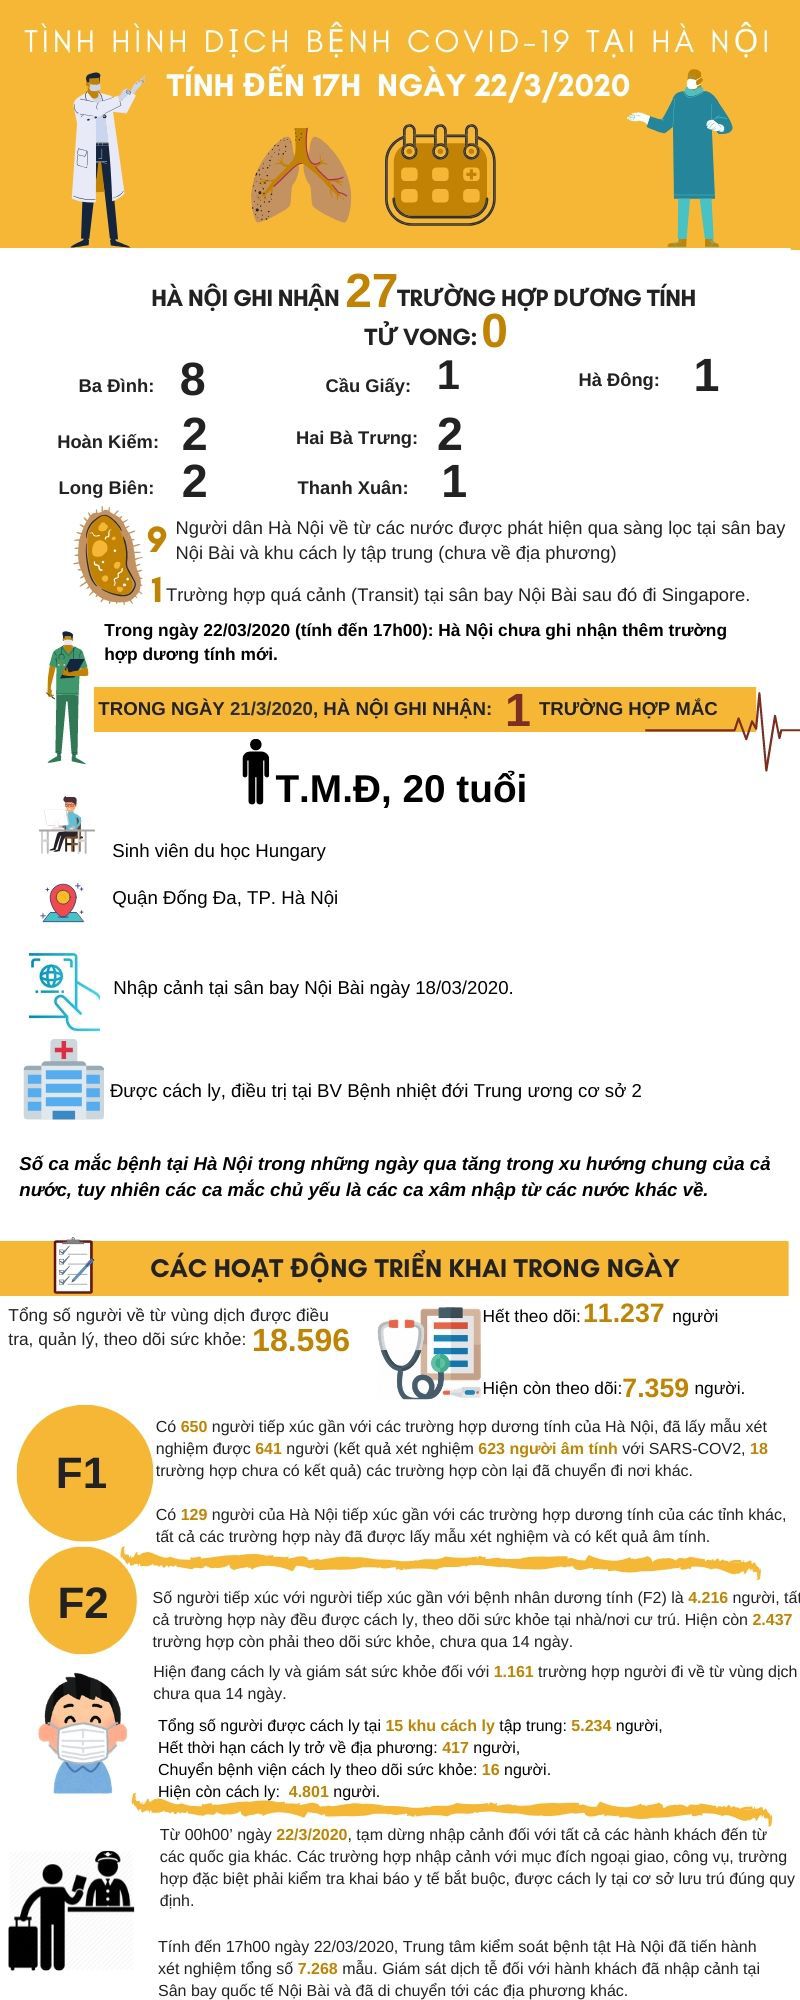 [Infographic] Cập nhật tình hình dịch bệnh Covid-19 tới 17h ngày 22/3 tại Hà Nội - Ảnh 1